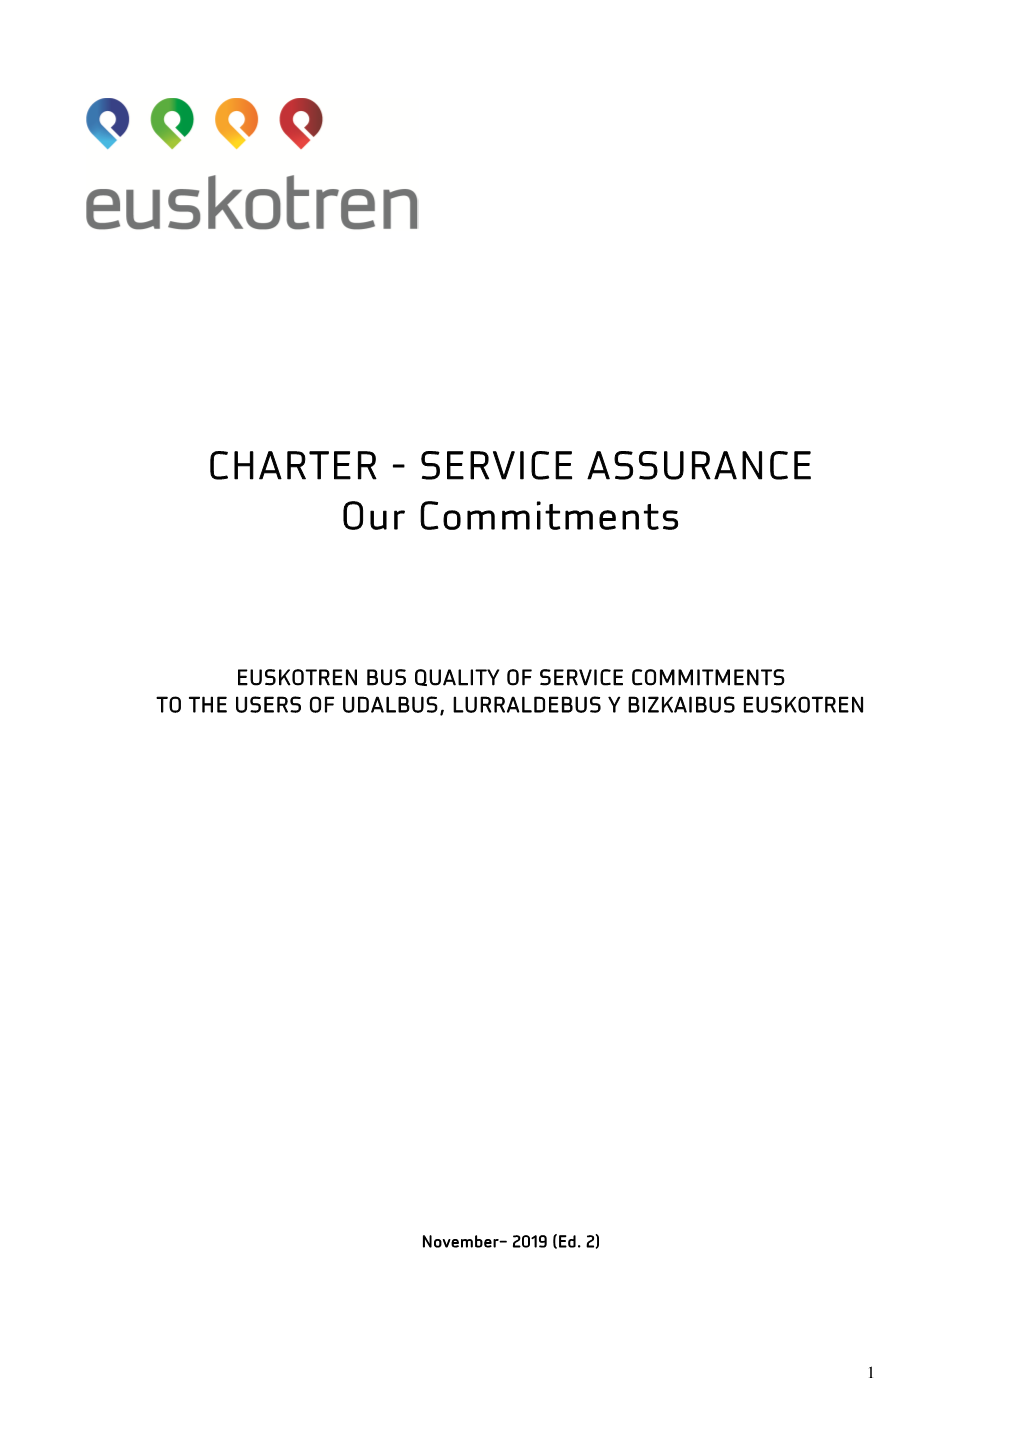 Charter-Service Assurance